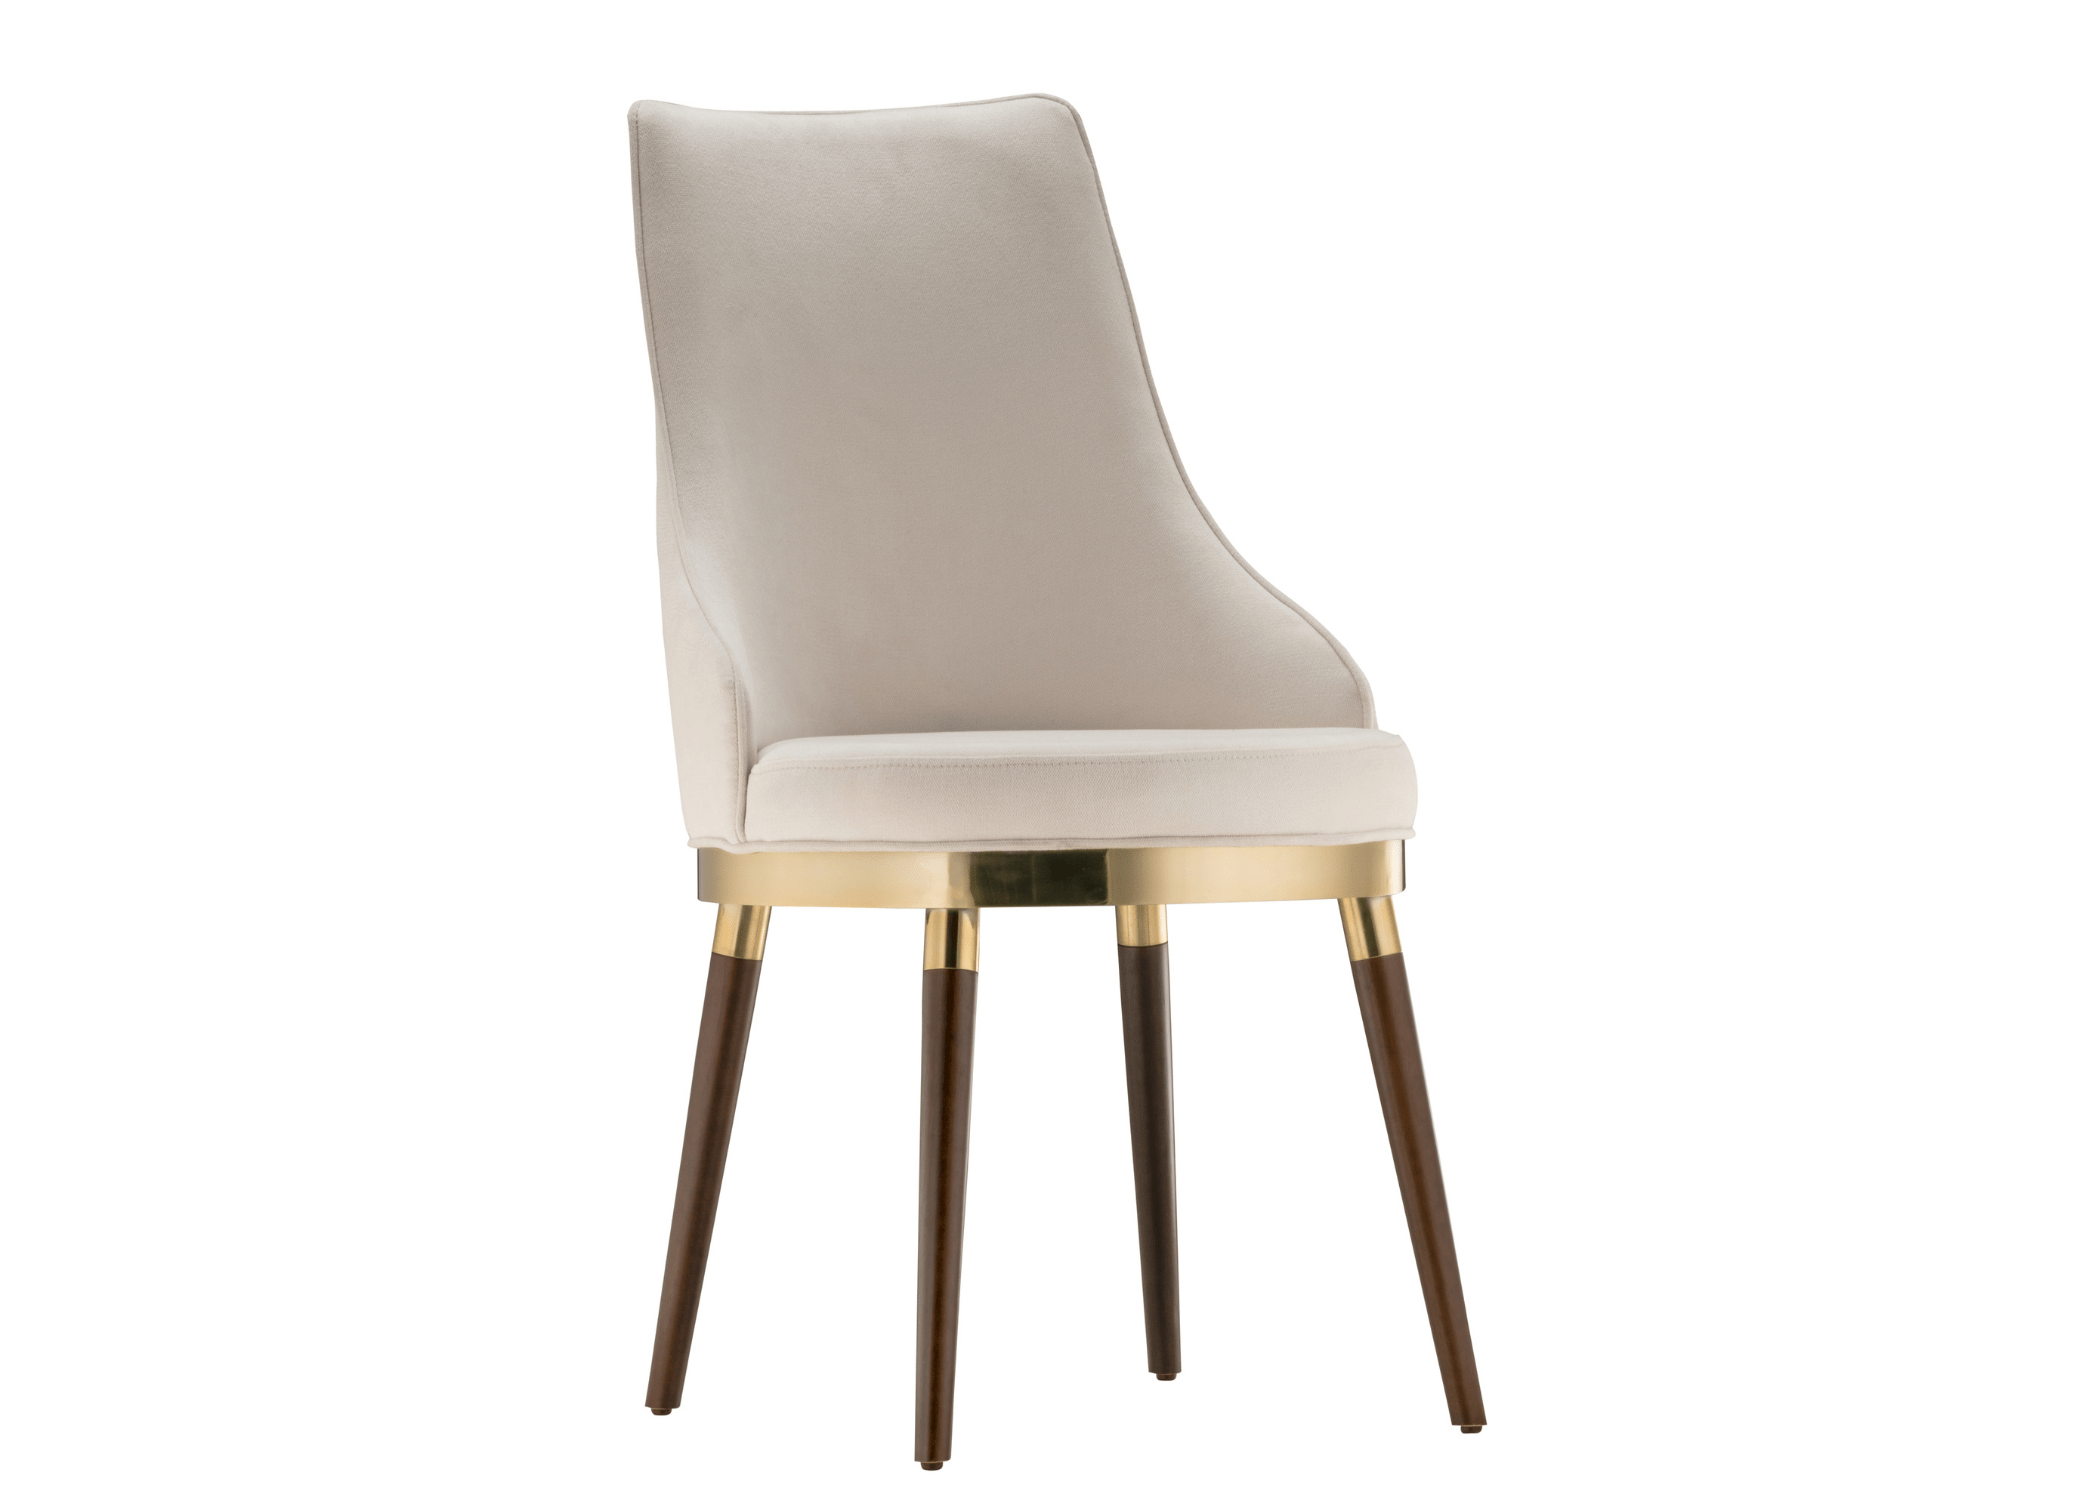 A Cadeira Lorena é um exemplo notável de como uma combinação de materiais pode resultar em uma peça de mobiliário verdadeiramente distinta e elegante.